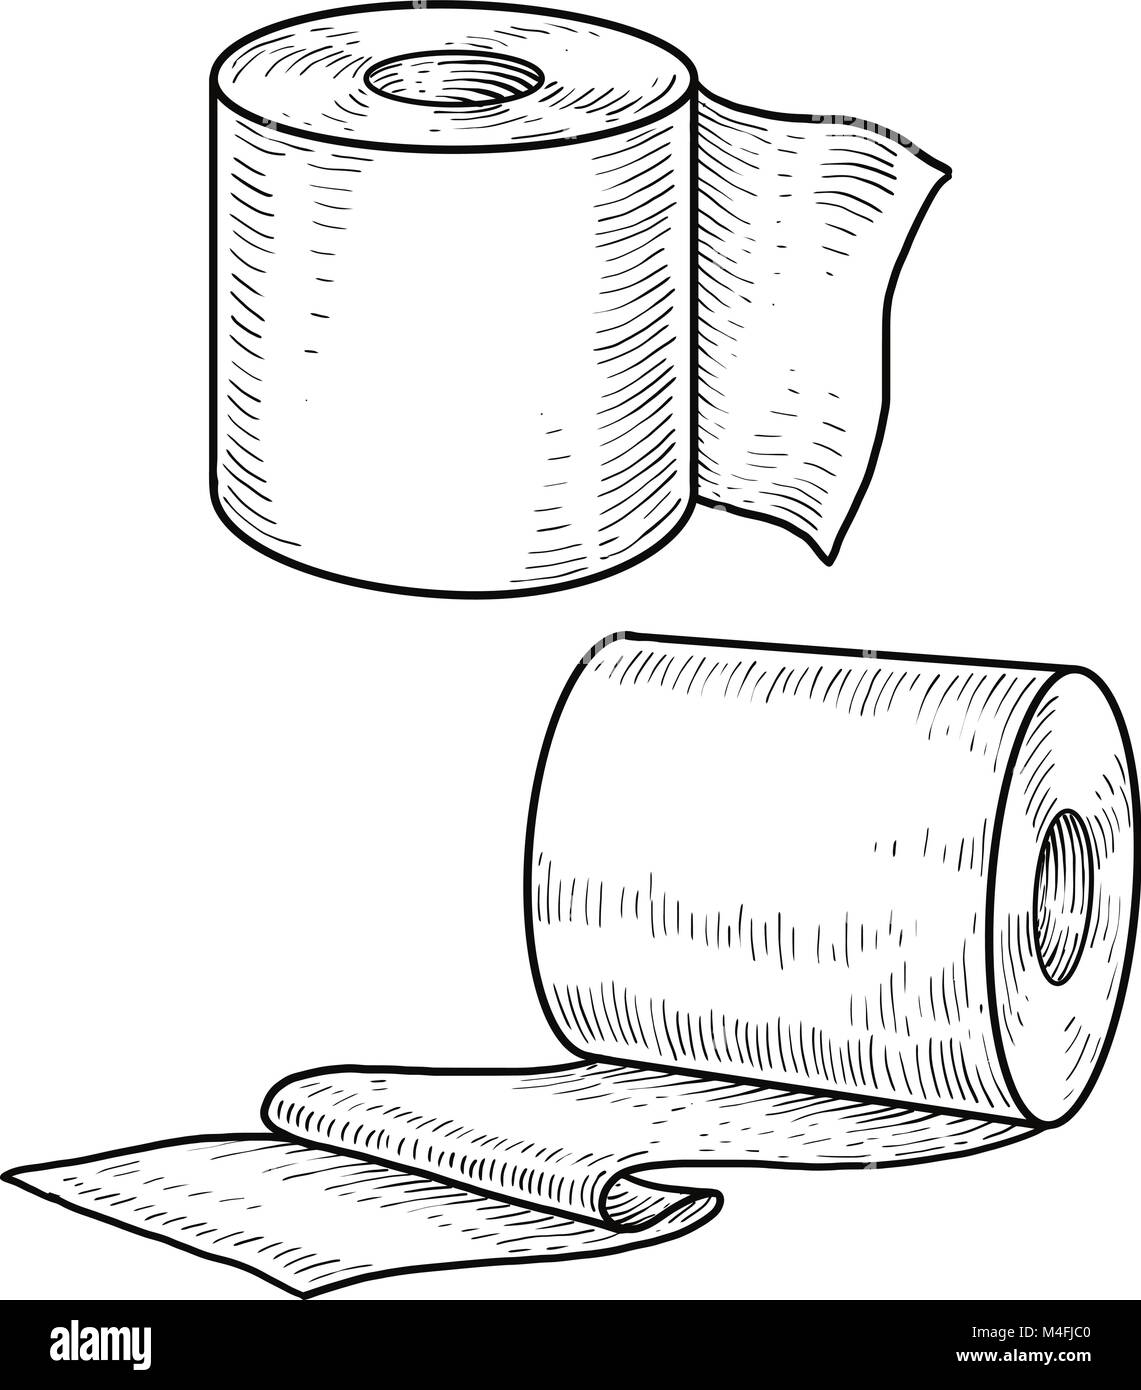 Papier toilette illustration, dessin, gravure, encre, dessin au trait,  vector Image Vectorielle Stock - Alamy